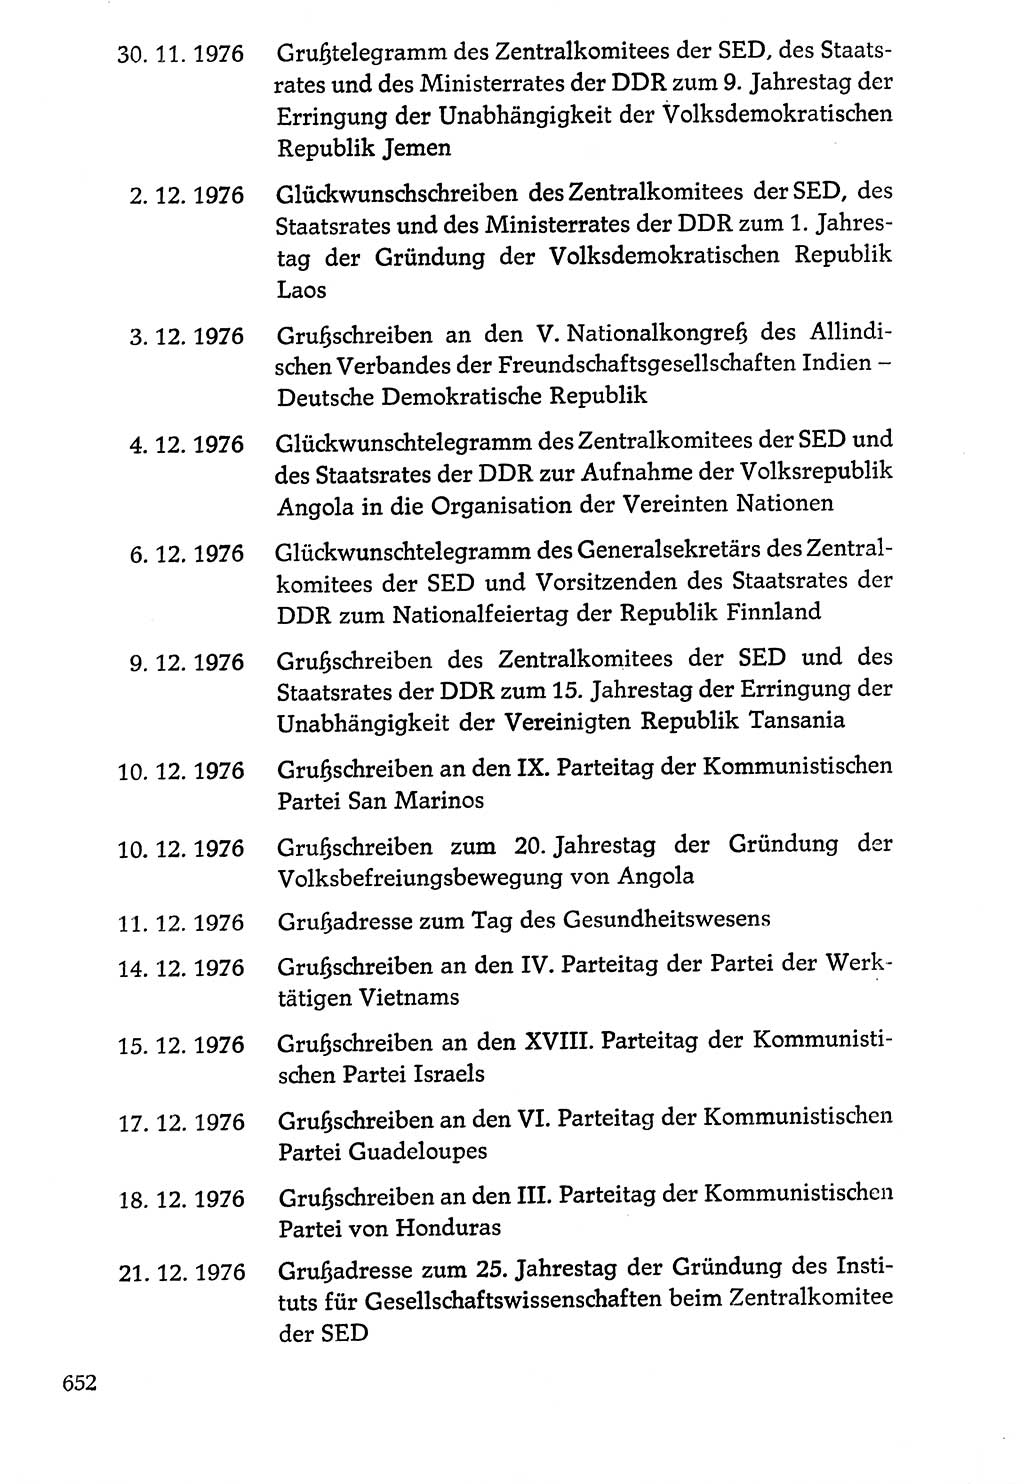 Dokumente der Sozialistischen Einheitspartei Deutschlands (SED) [Deutsche Demokratische Republik (DDR)] 1976-1977, Seite 652 (Dok. SED DDR 1976-1977, S. 652)